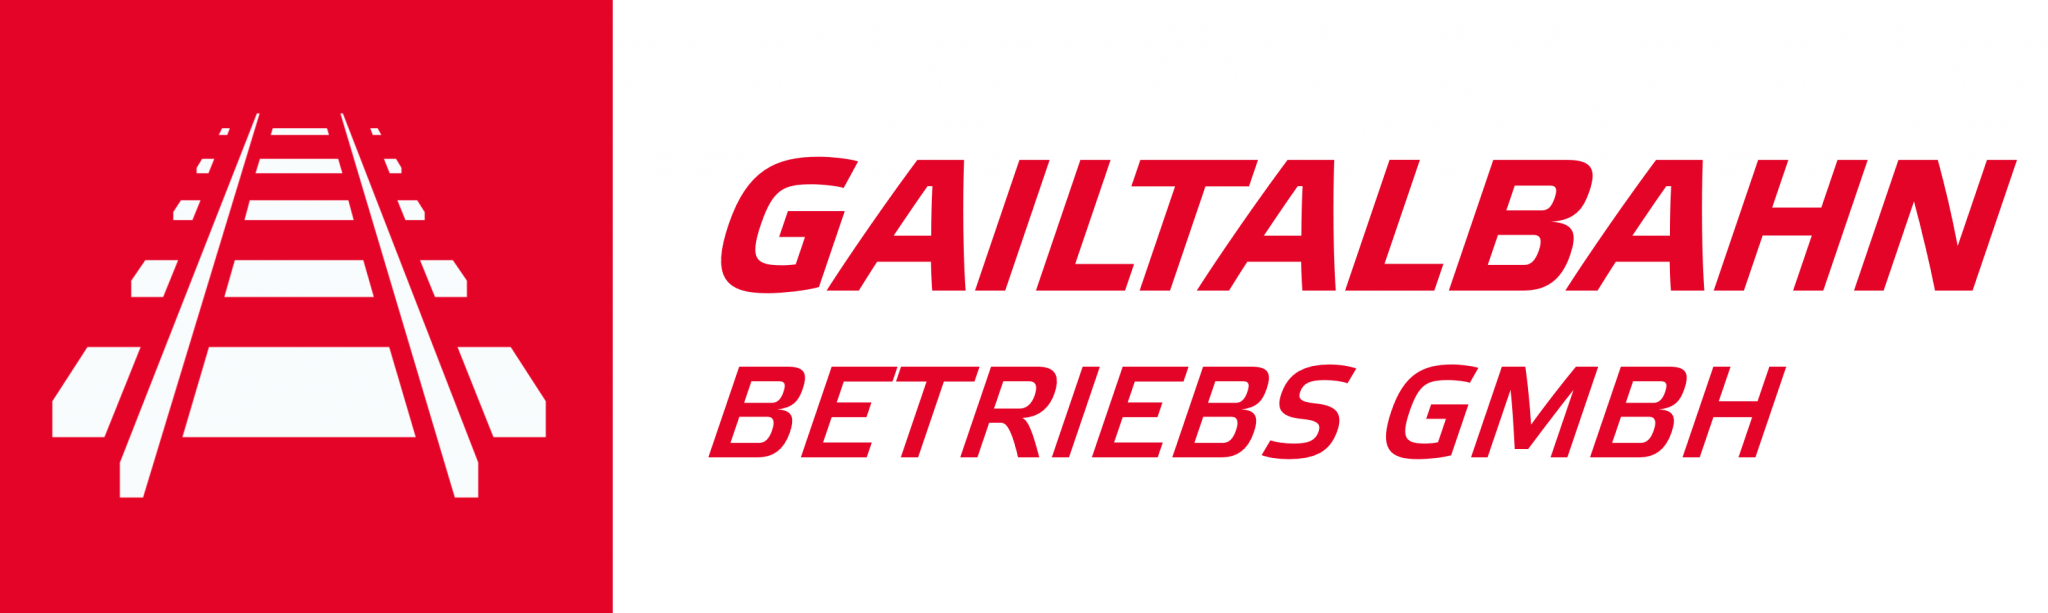 Gailtalbahn Betriebs GmbH - Logo